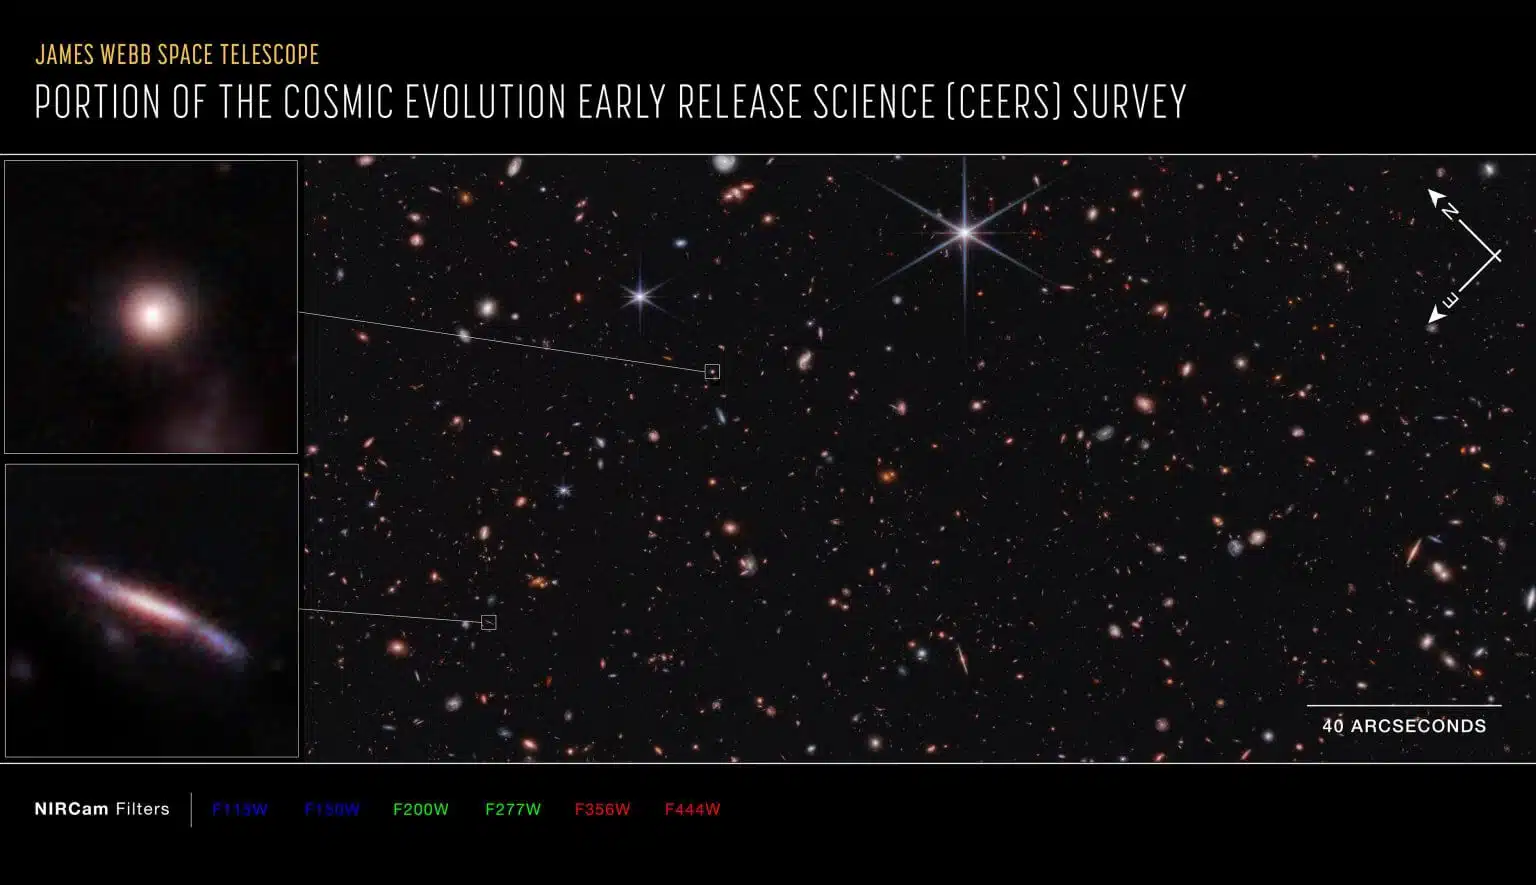 כיתוב ארוך של תמונה

זוהי חלקה של סקר המדע המוקדם של אבולוציית היקום (CEERS), המורכבת ממספר נקודות בתחום האינפרא-אדום הקרוב ממצלמת NIRCam (מצלמת האינפרא-אדום הקרוב) שבטלסקופ החלל ג'יימס ווב. התצפיות הללו נערכות באותו אזור שנחקר על-ידי טלסקופ החלל האבל, הידוע כרצועת גרות המורחבת.

חצים המציגים את הכיוונים צפון ומזרח מראים את כיוון התמונה בשמים. יש לשים לב כי היחס בין צפון למזרח בשמים (כפי שנראה מלמטה) הפוך לעומת חצי הכיוונים במפה של כדור הארץ (כפי שנראה מלמעלה).

התמונה מציגה אורכי גל של אינפרא-אדום קרוב בלתי נראים שהומרו לצבעים נראים לעין. מפתח הצבעים מראה אילו מסנני NIRCam שימשו באיסוף האור. צבע שם כל מסנן הוא הצבע הנראה לעין שמייצג את האור האינפרא-אדום שעובר דרך מסנן זה.

סרגל הקנה מסומן בארק-שניות שהן מדד למרחק זוויתי בשמים. ארק-שנייה אחת שווה למדידה זוויתית של 1/3600 ממעלה אחת. ישנם 60 ארק-דקות במעלה ו-60 ארק-שניות בארק-דקה. (הירח המלא מחזיק קוטר זוויתי של כ-30 ארק-דקות.) הגודל האמיתי של עצם שכוסה ארק-שנייה אחת בשמים תלוי במרחקו מהטלסקופ.

קרדיט: נאס"א, הסוכנות האירופית לחלל (ESA), הסוכנות הקנדית לחלל (CSA), מכון מדעי הטלסקופ החללי (STScI), סטיב פינקלשטיין (אוניברסיטת טקסס באוסטין)